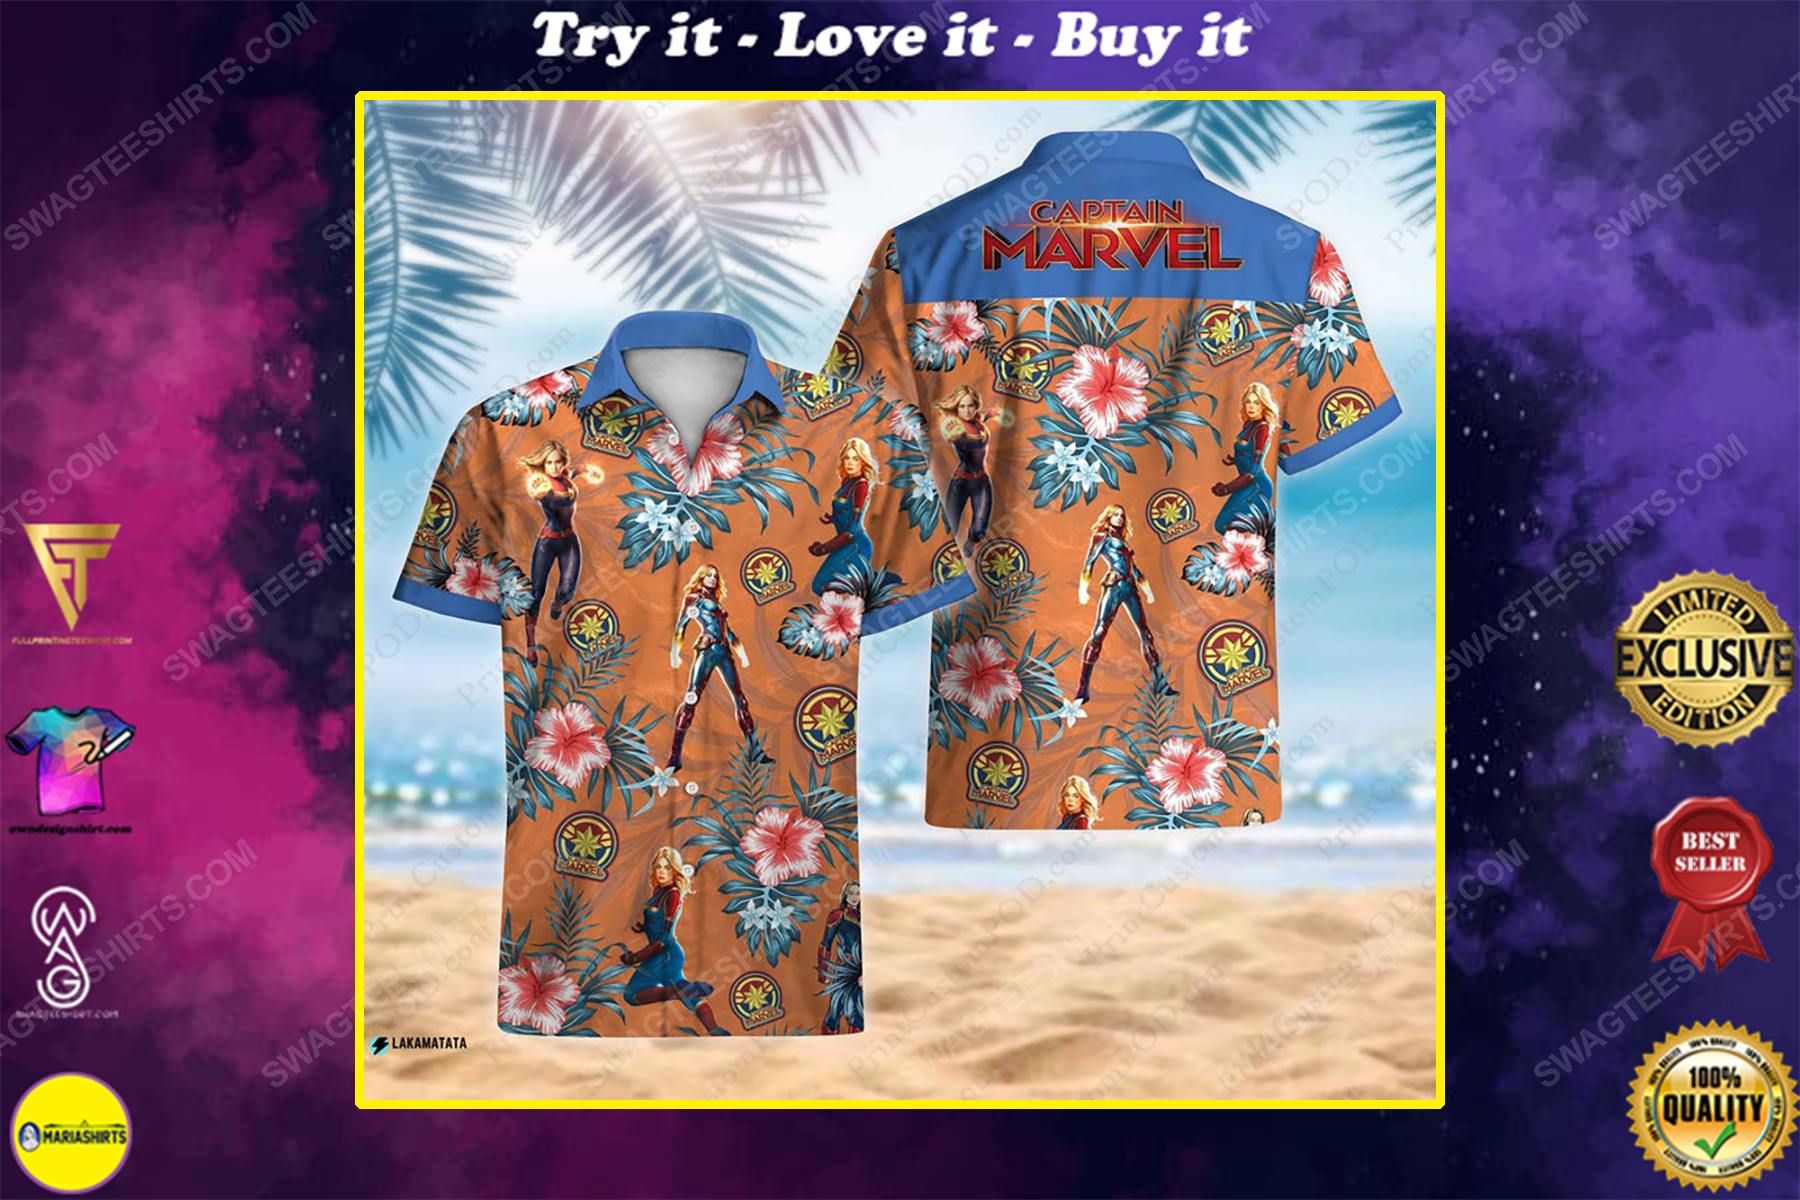 Captain america avengers disney marvel movie hawaiian shirt